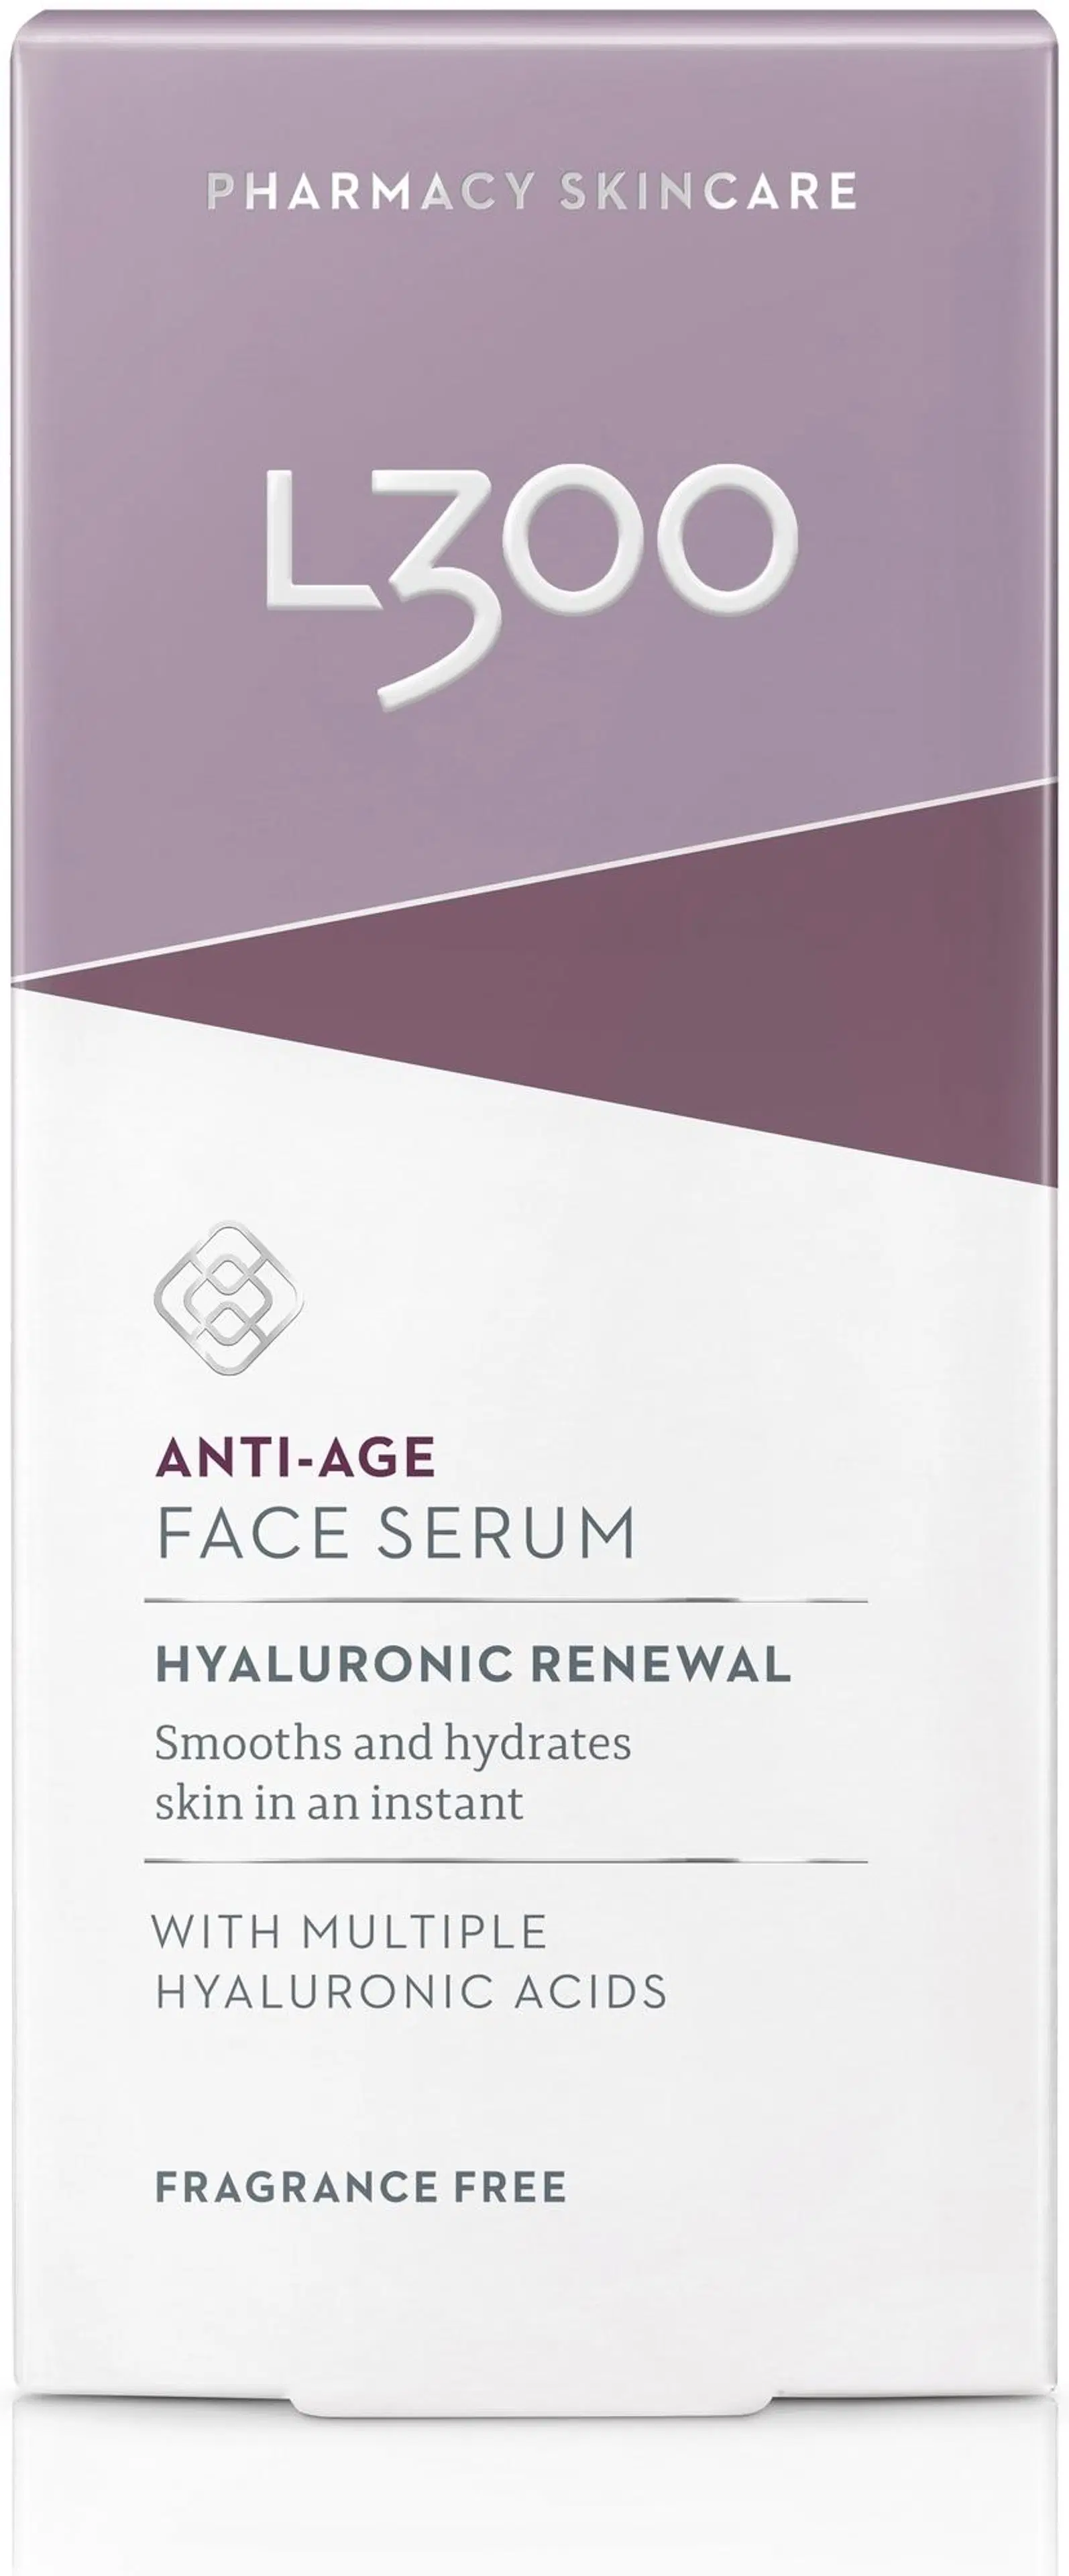 L300 Hyaluronic Renewal Anti-Age Face Serum kasvoseerumi 30ml